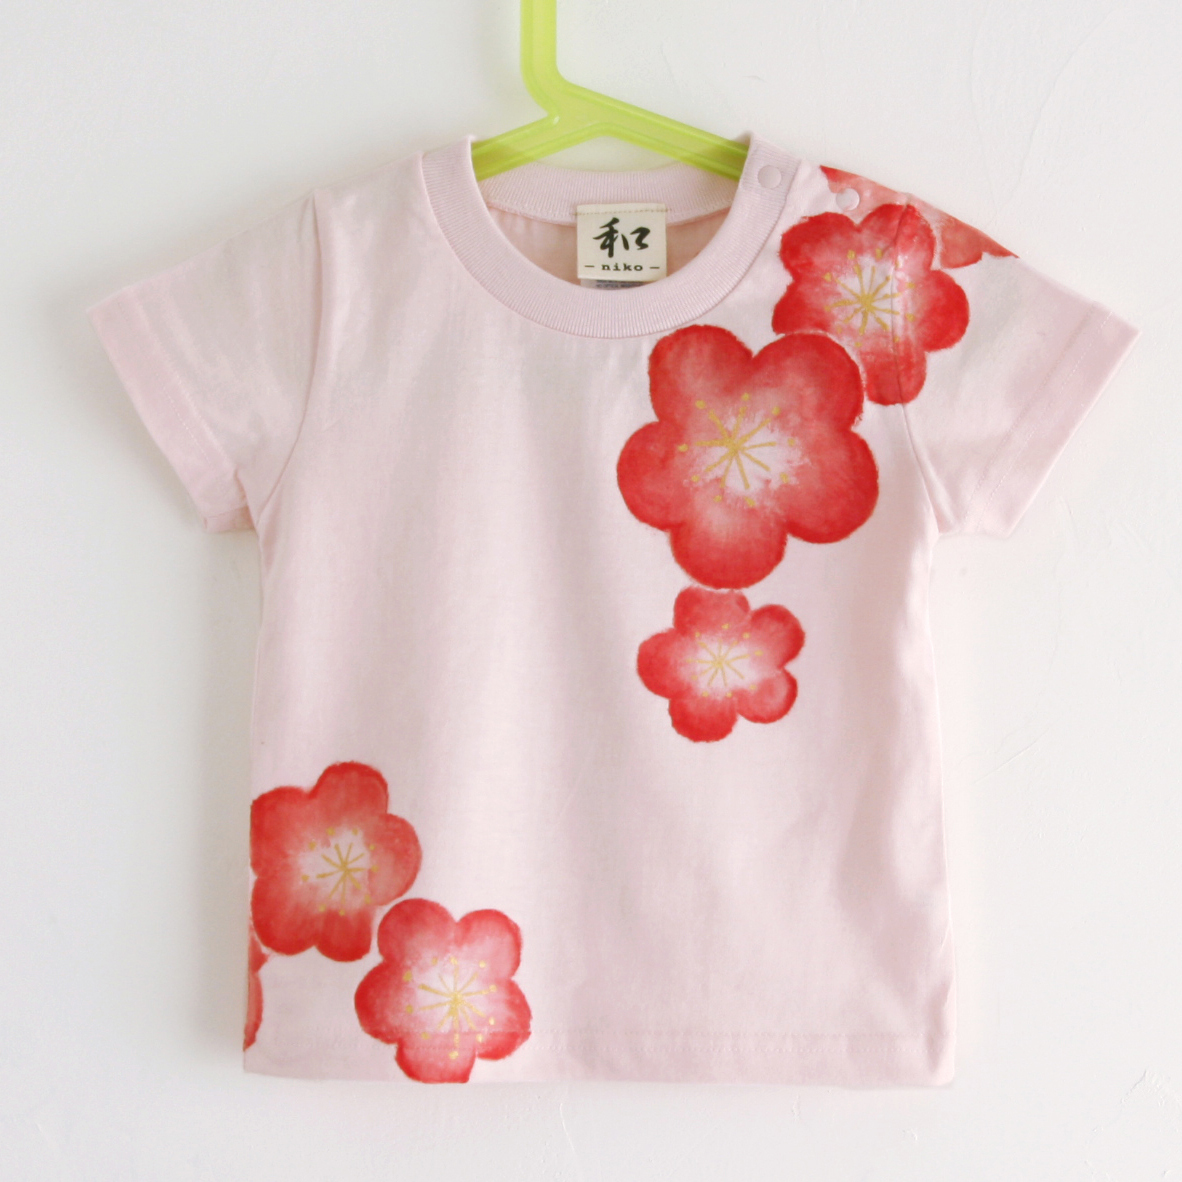 키즈 티셔츠, 사이즈 130, 분홍색, 매화무늬 티셔츠, 손으로 그린 매화 무늬 티셔츠, 짧은 소매, 일본식 디자인, 일본식, 복고풍, 수공, 상의, 반소매 티셔츠, 130(125~134cm)